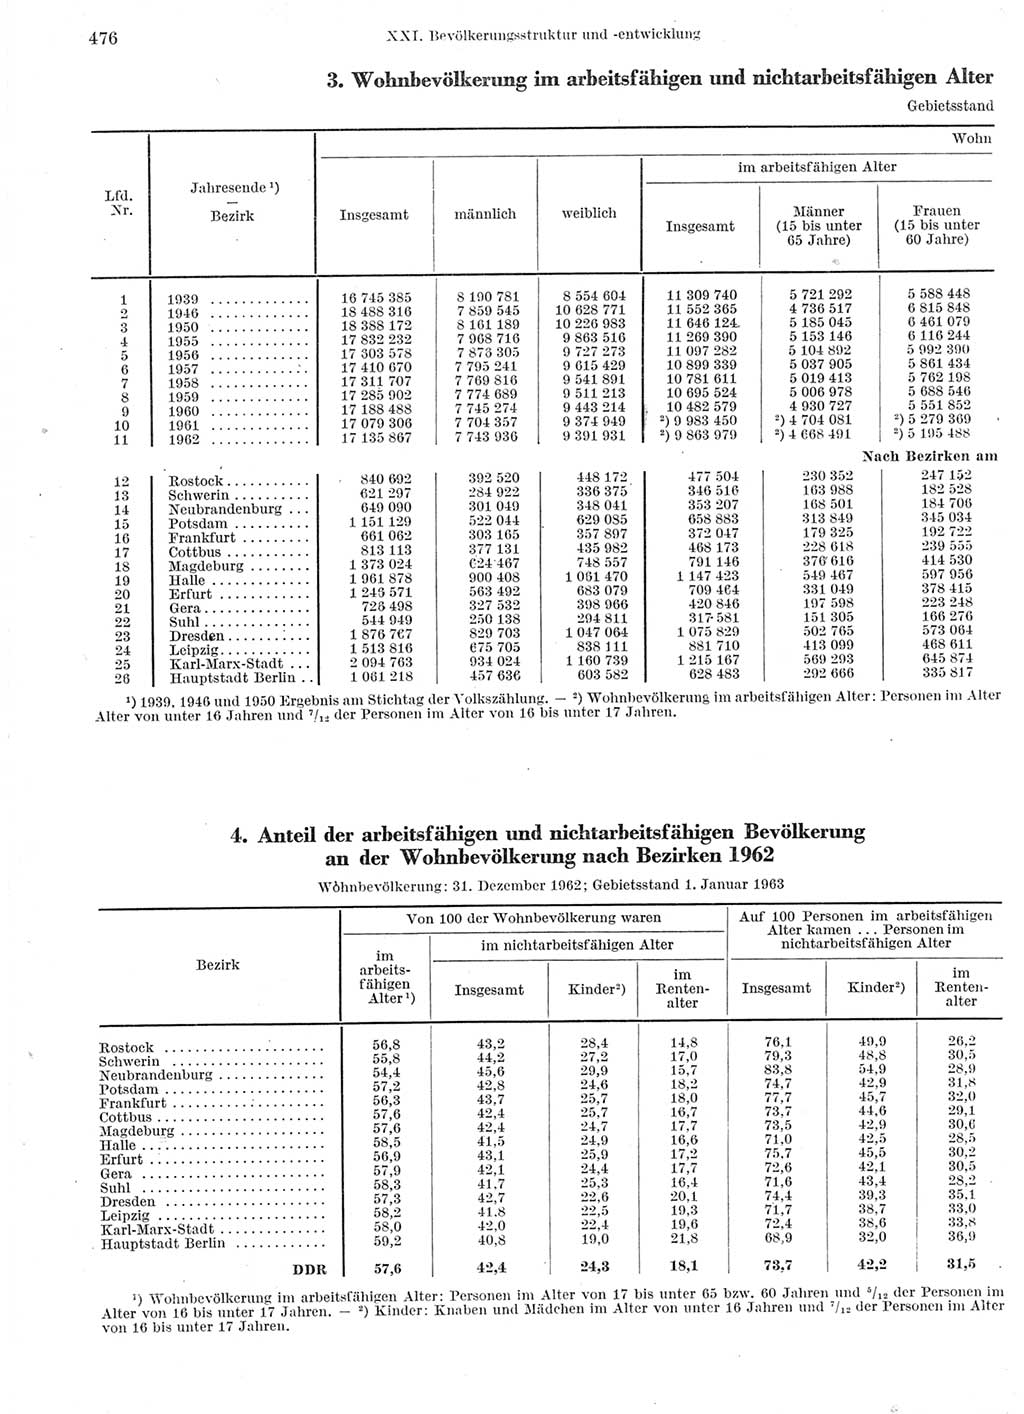 Statistisches Jahrbuch der Deutschen Demokratischen Republik (DDR) 1963, Seite 476 (Stat. Jb. DDR 1963, S. 476)